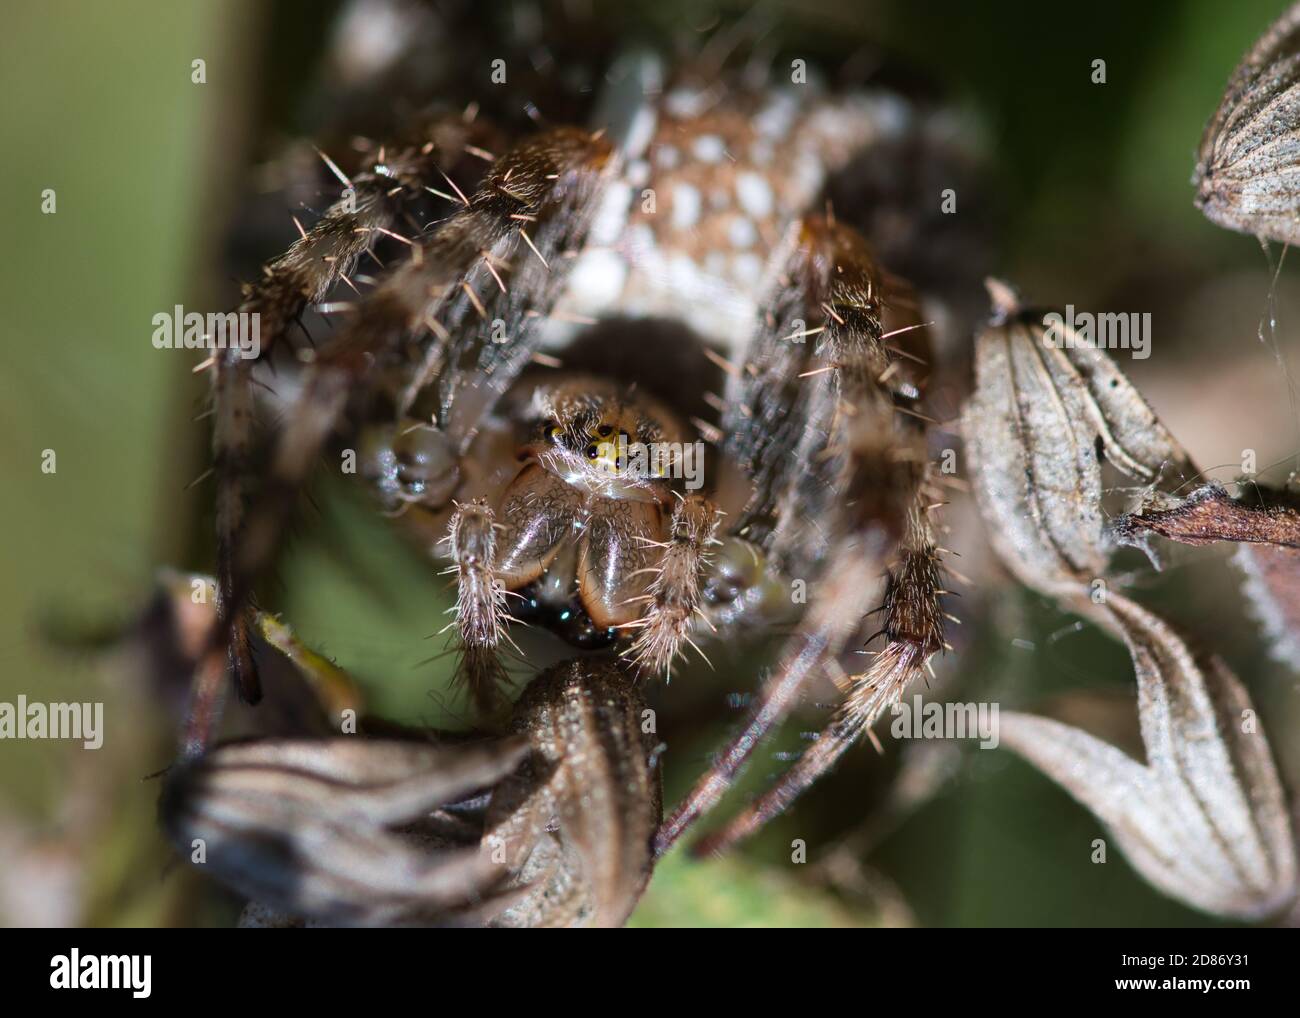 Kreuzspinne Makro-Textur von Insekten Kopf, Augen und Kiefer, behaarte Körper und segmentierte Beine, selektiver Fokus, verschwommener Hintergrund Stockfoto